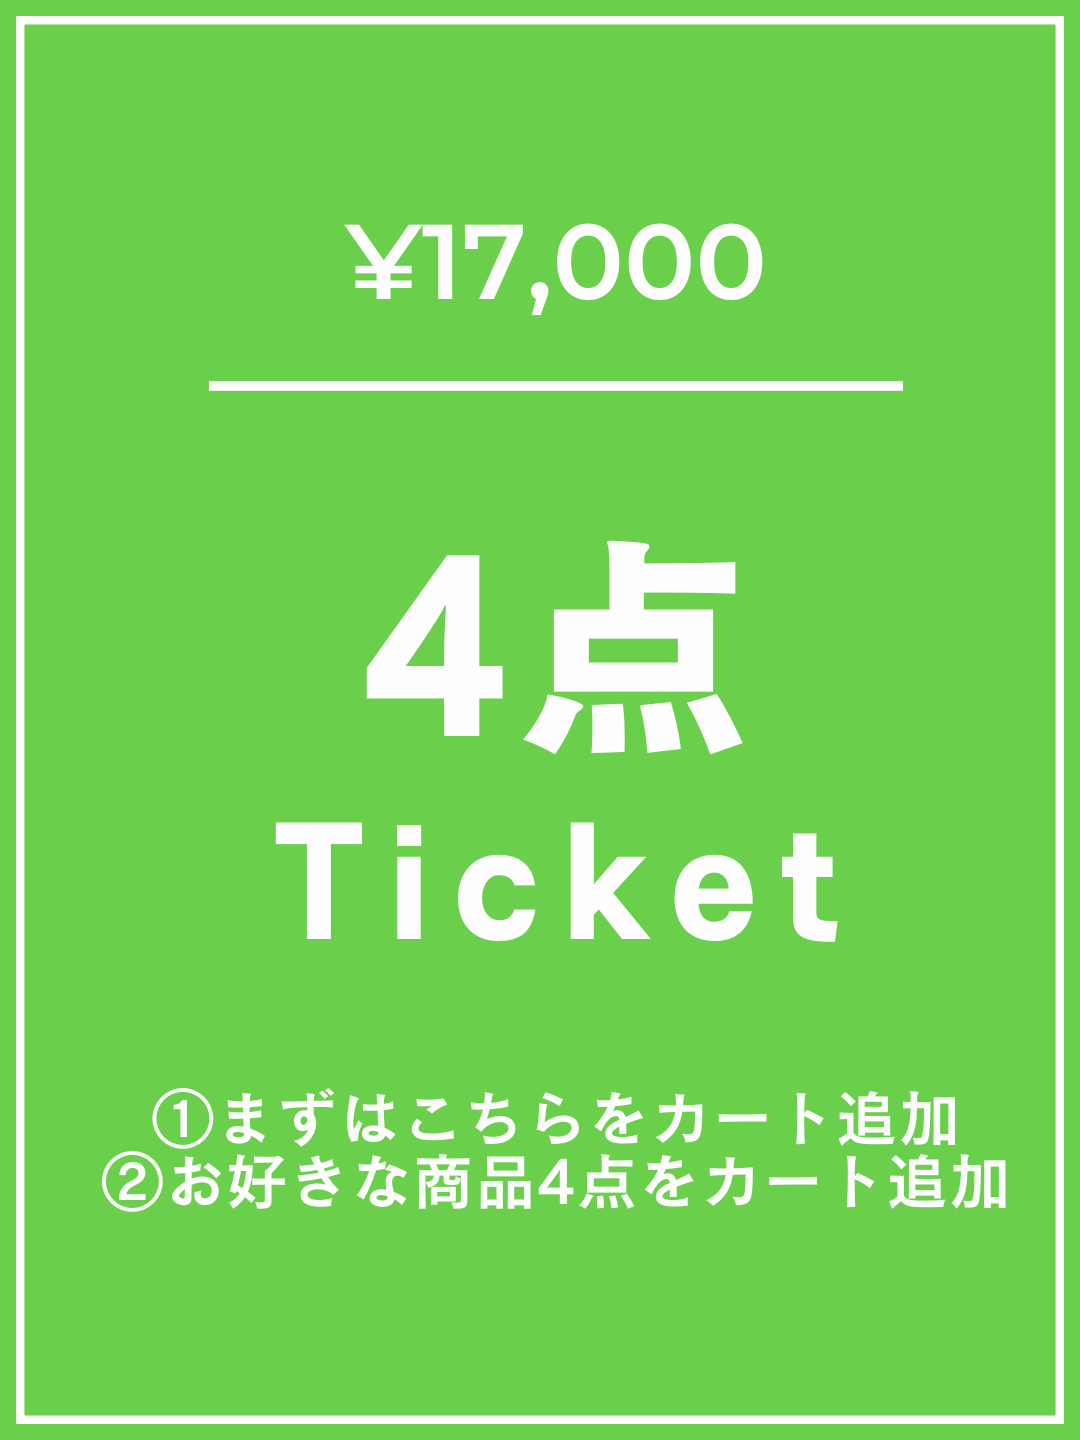 【1番初めにこちらをカートイン】¥17,000チケット